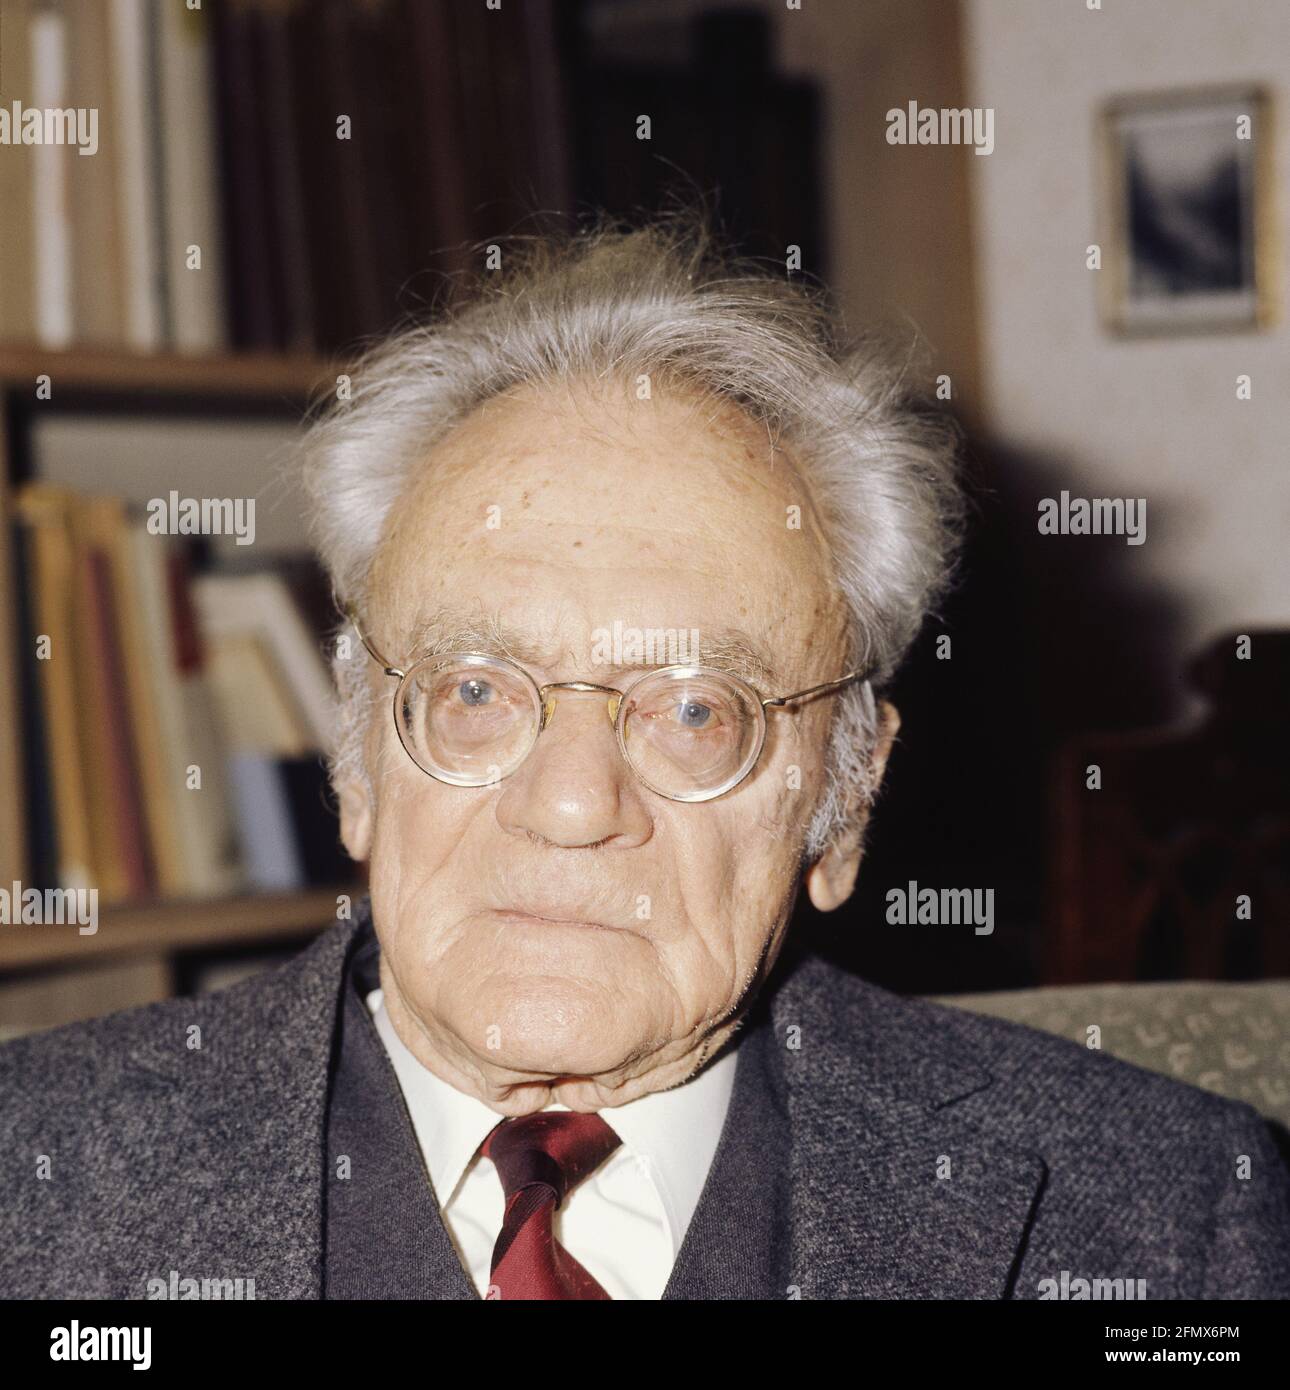 Frisch, Karl Ritter von, 20.11.1886 - 12.6.1982, österreichischer Wissenschaftler (Ethologe), Portrait, 70ER JAHRE, ZUSÄTZLICHE-RIGHTS-CLEARANCE-INFO-NOT-AVAILABLE Stockfoto